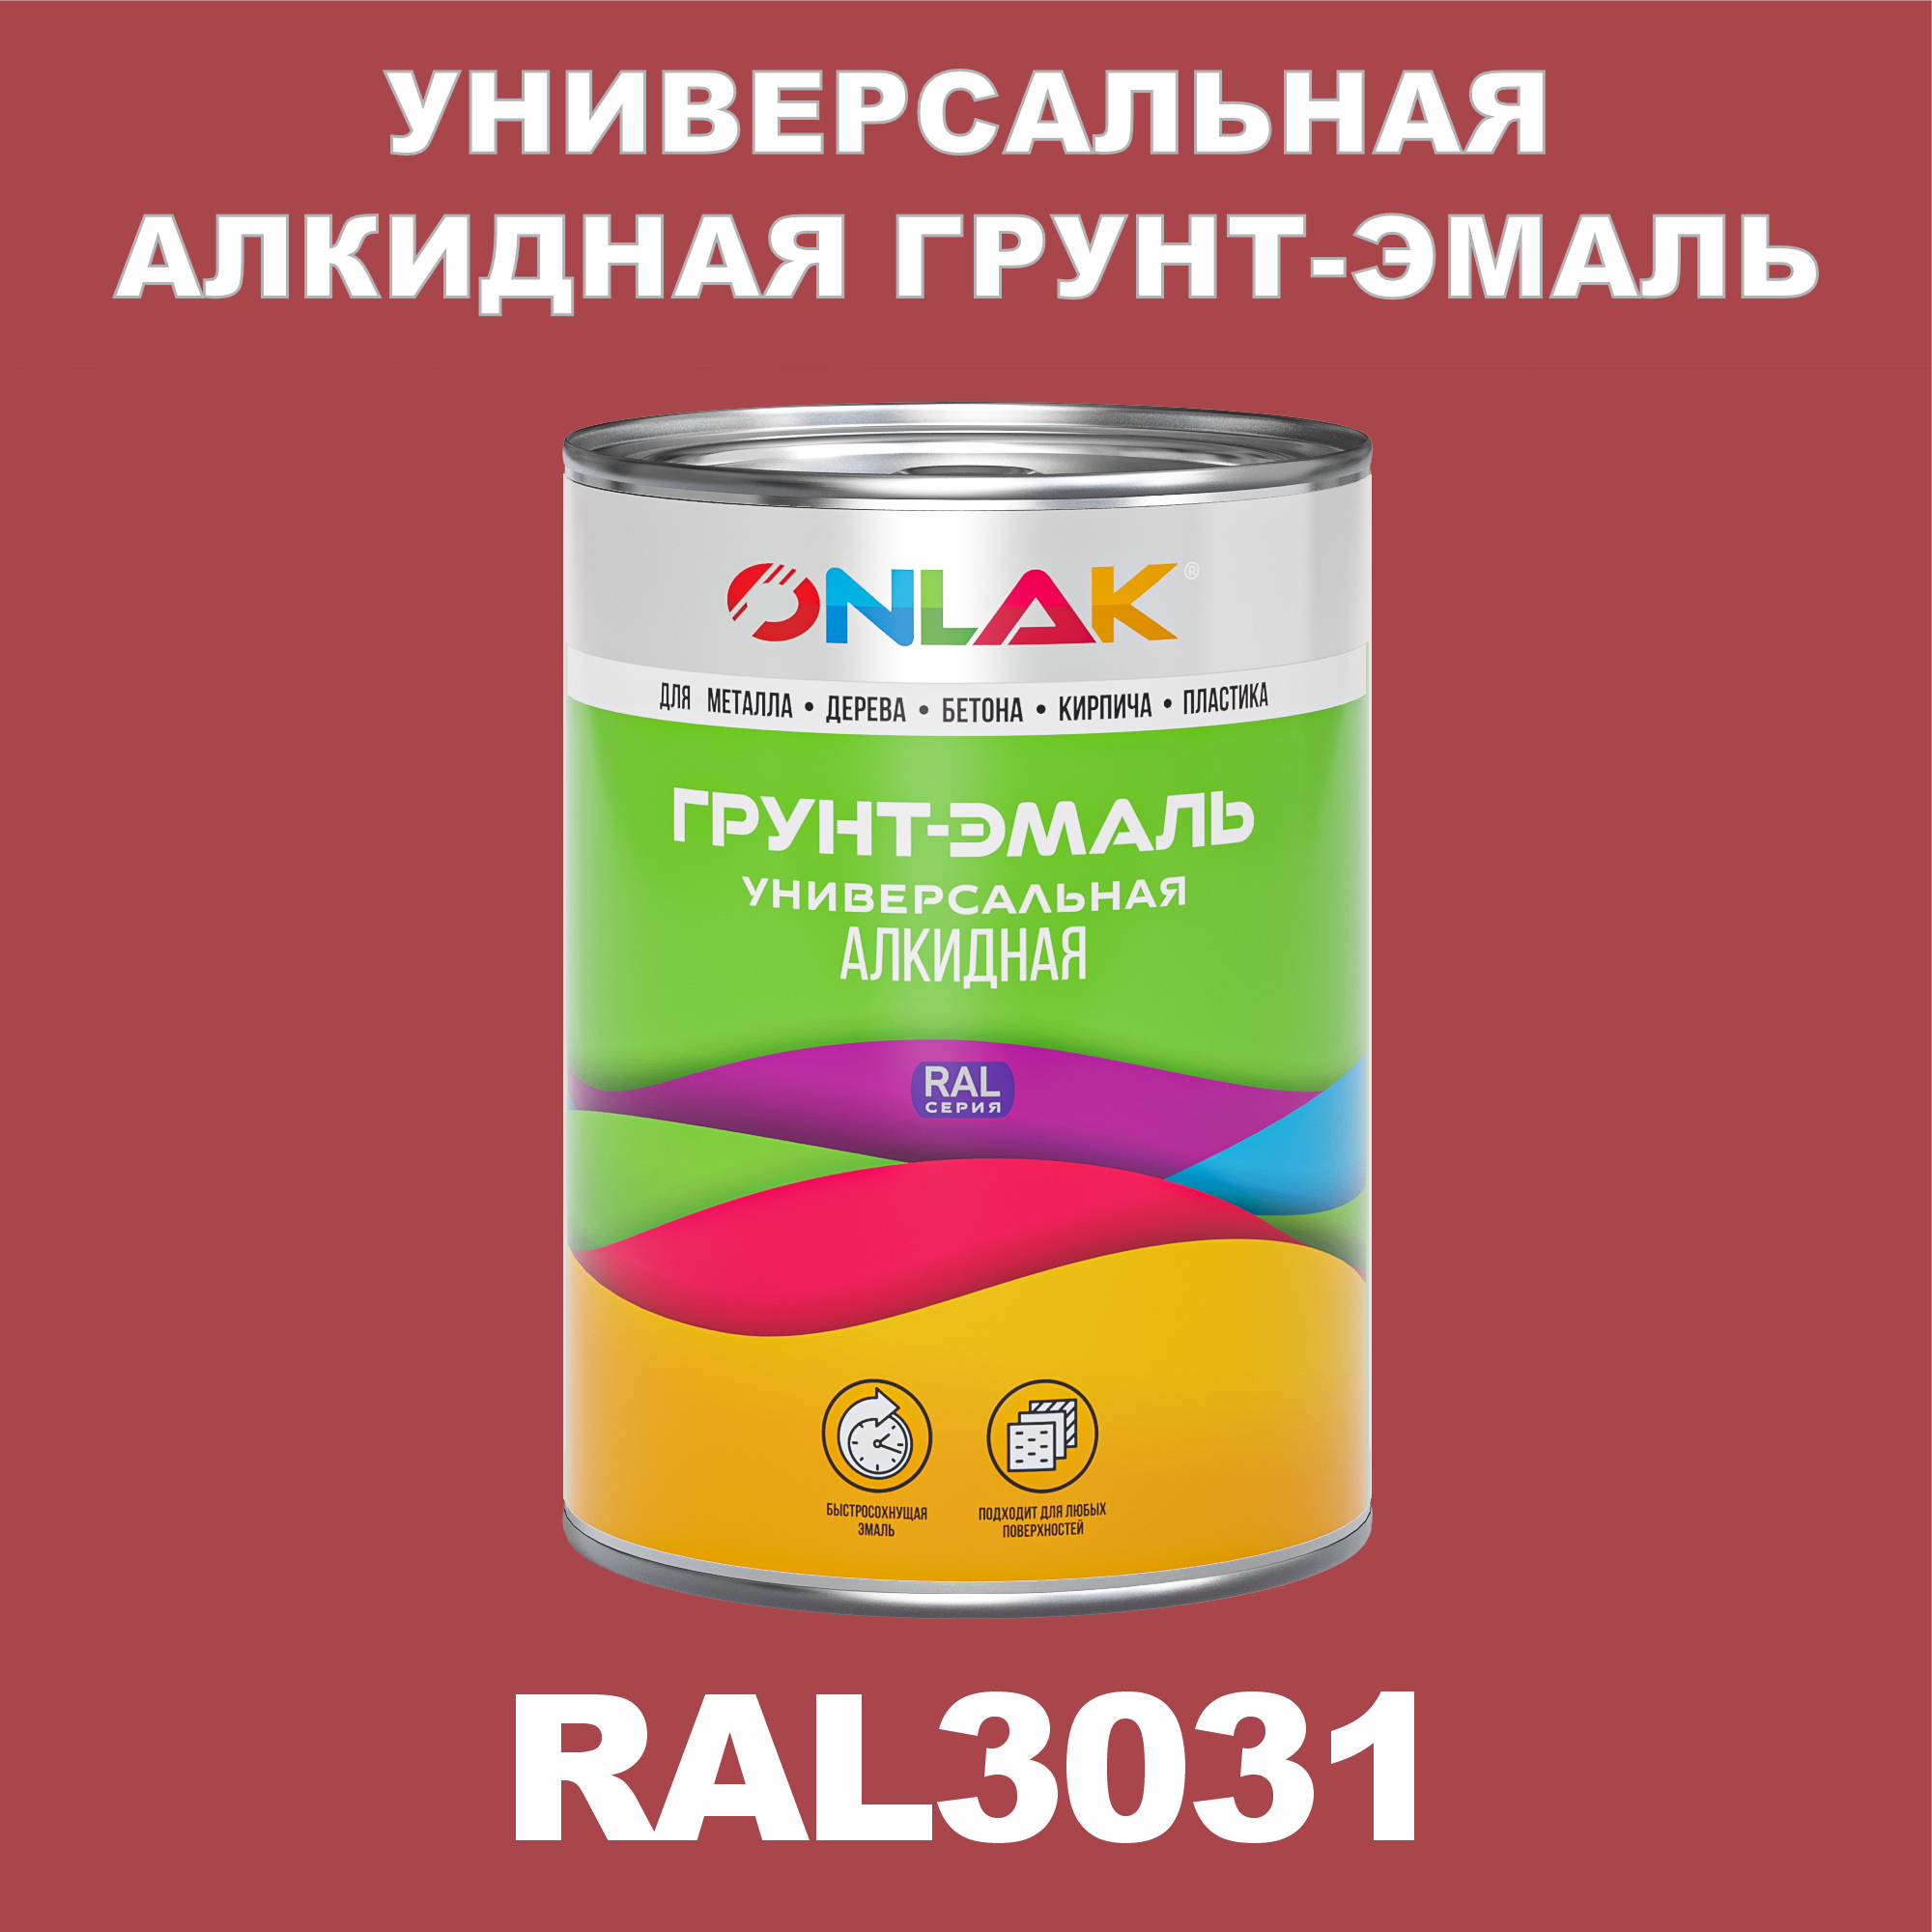 Грунт-эмаль ONLAK 1К RAL3031 антикоррозионная алкидная по металлу по ржавчине 1 кг антикоррозионная грунт эмаль detop